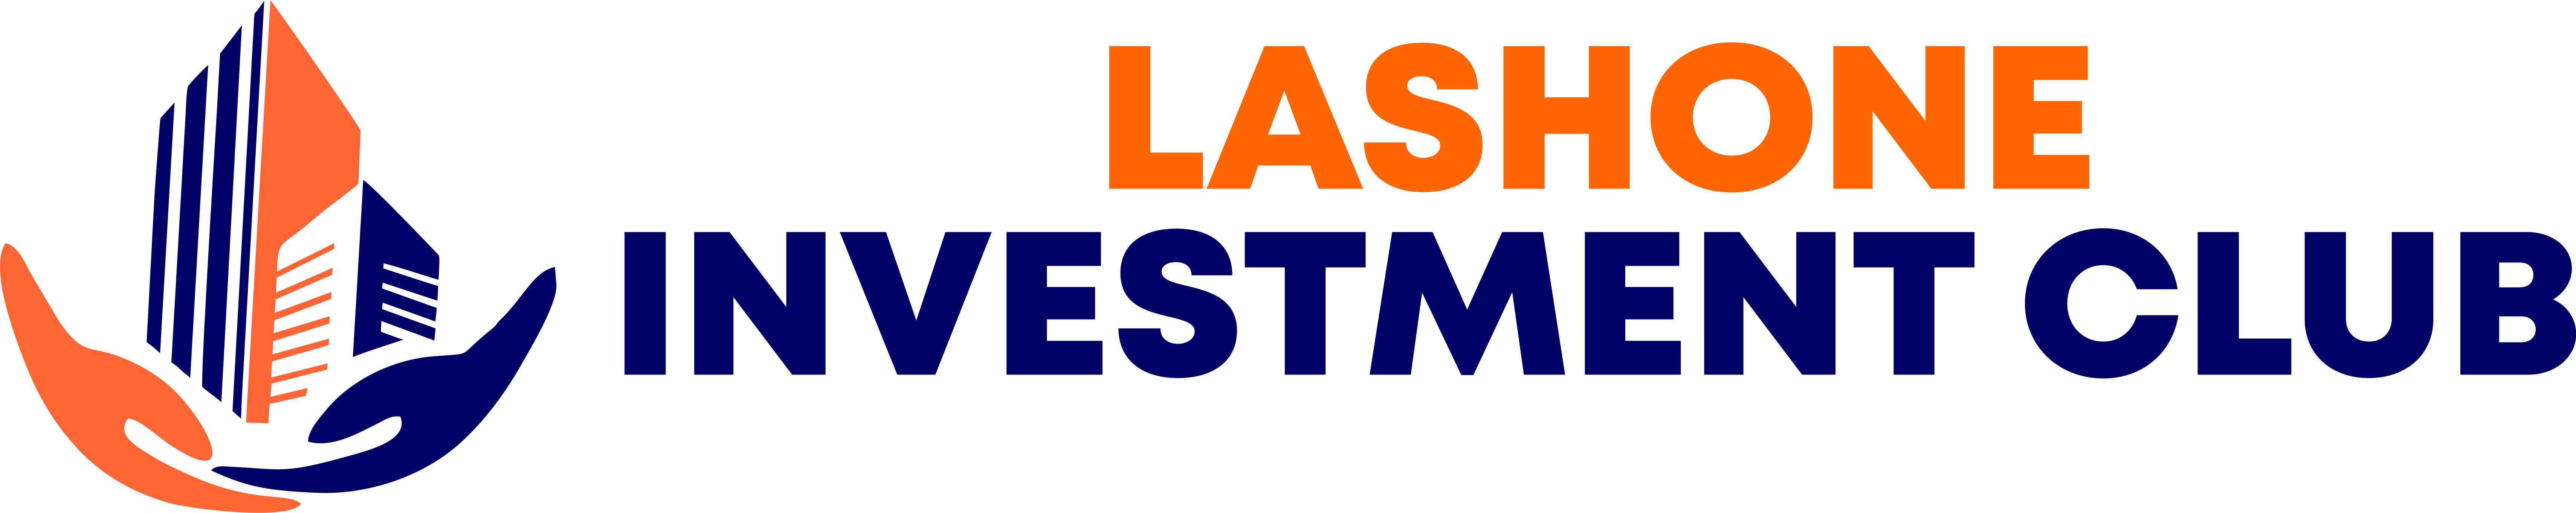 Lashone investment club logo 1